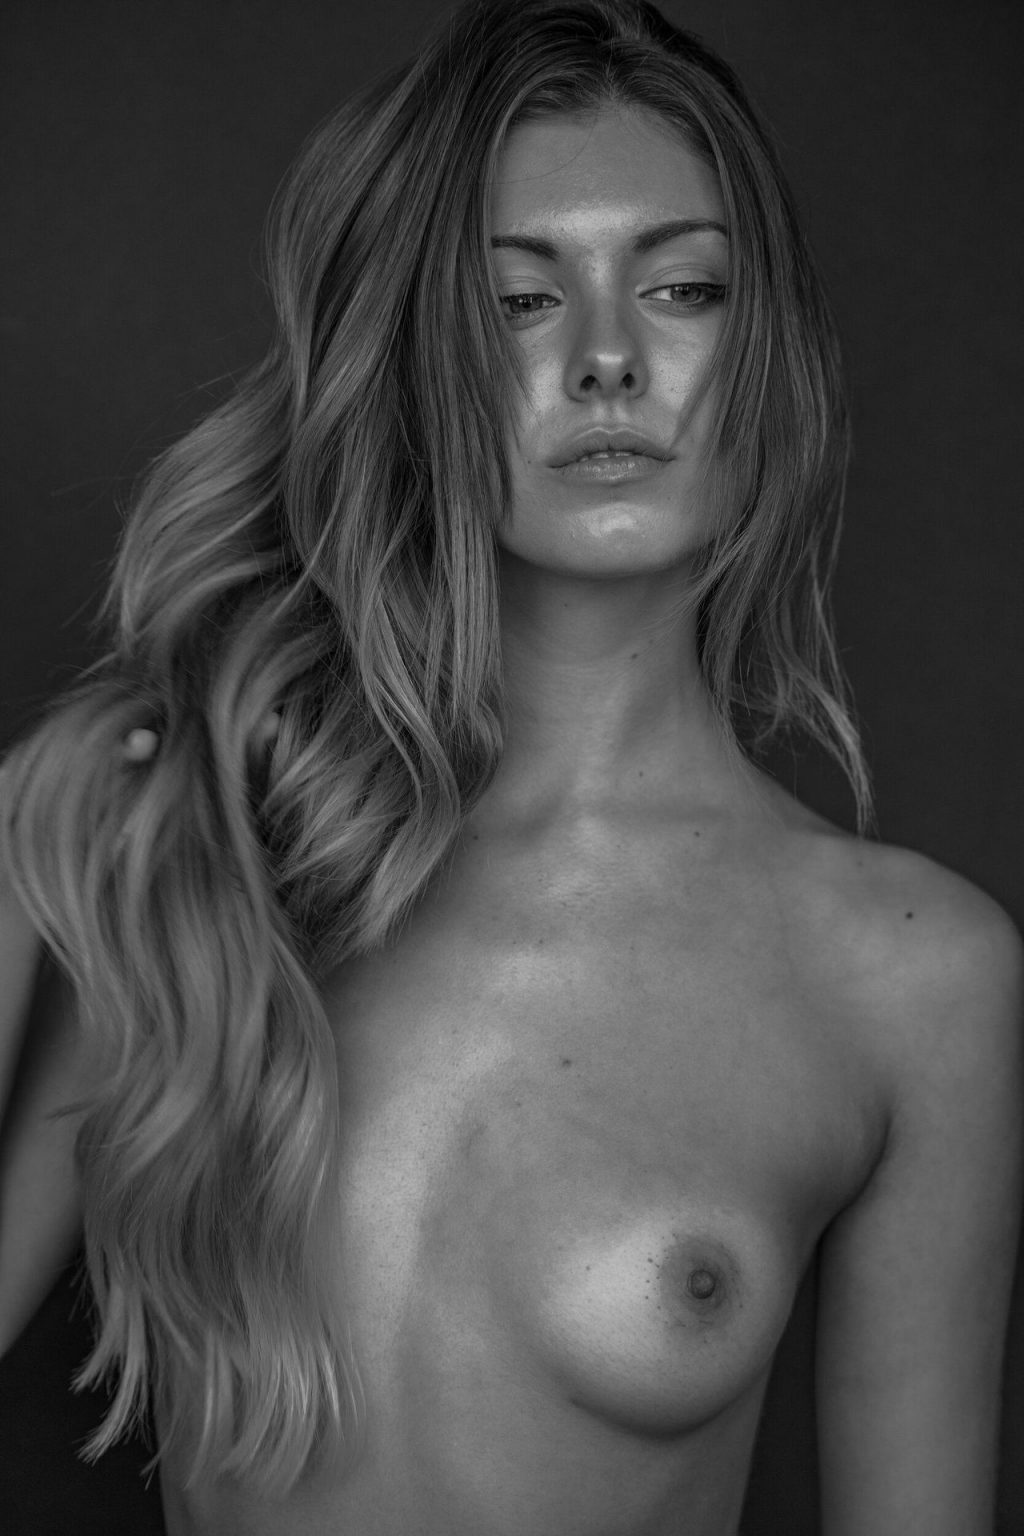 Carmella rose @carmellarose nude pics